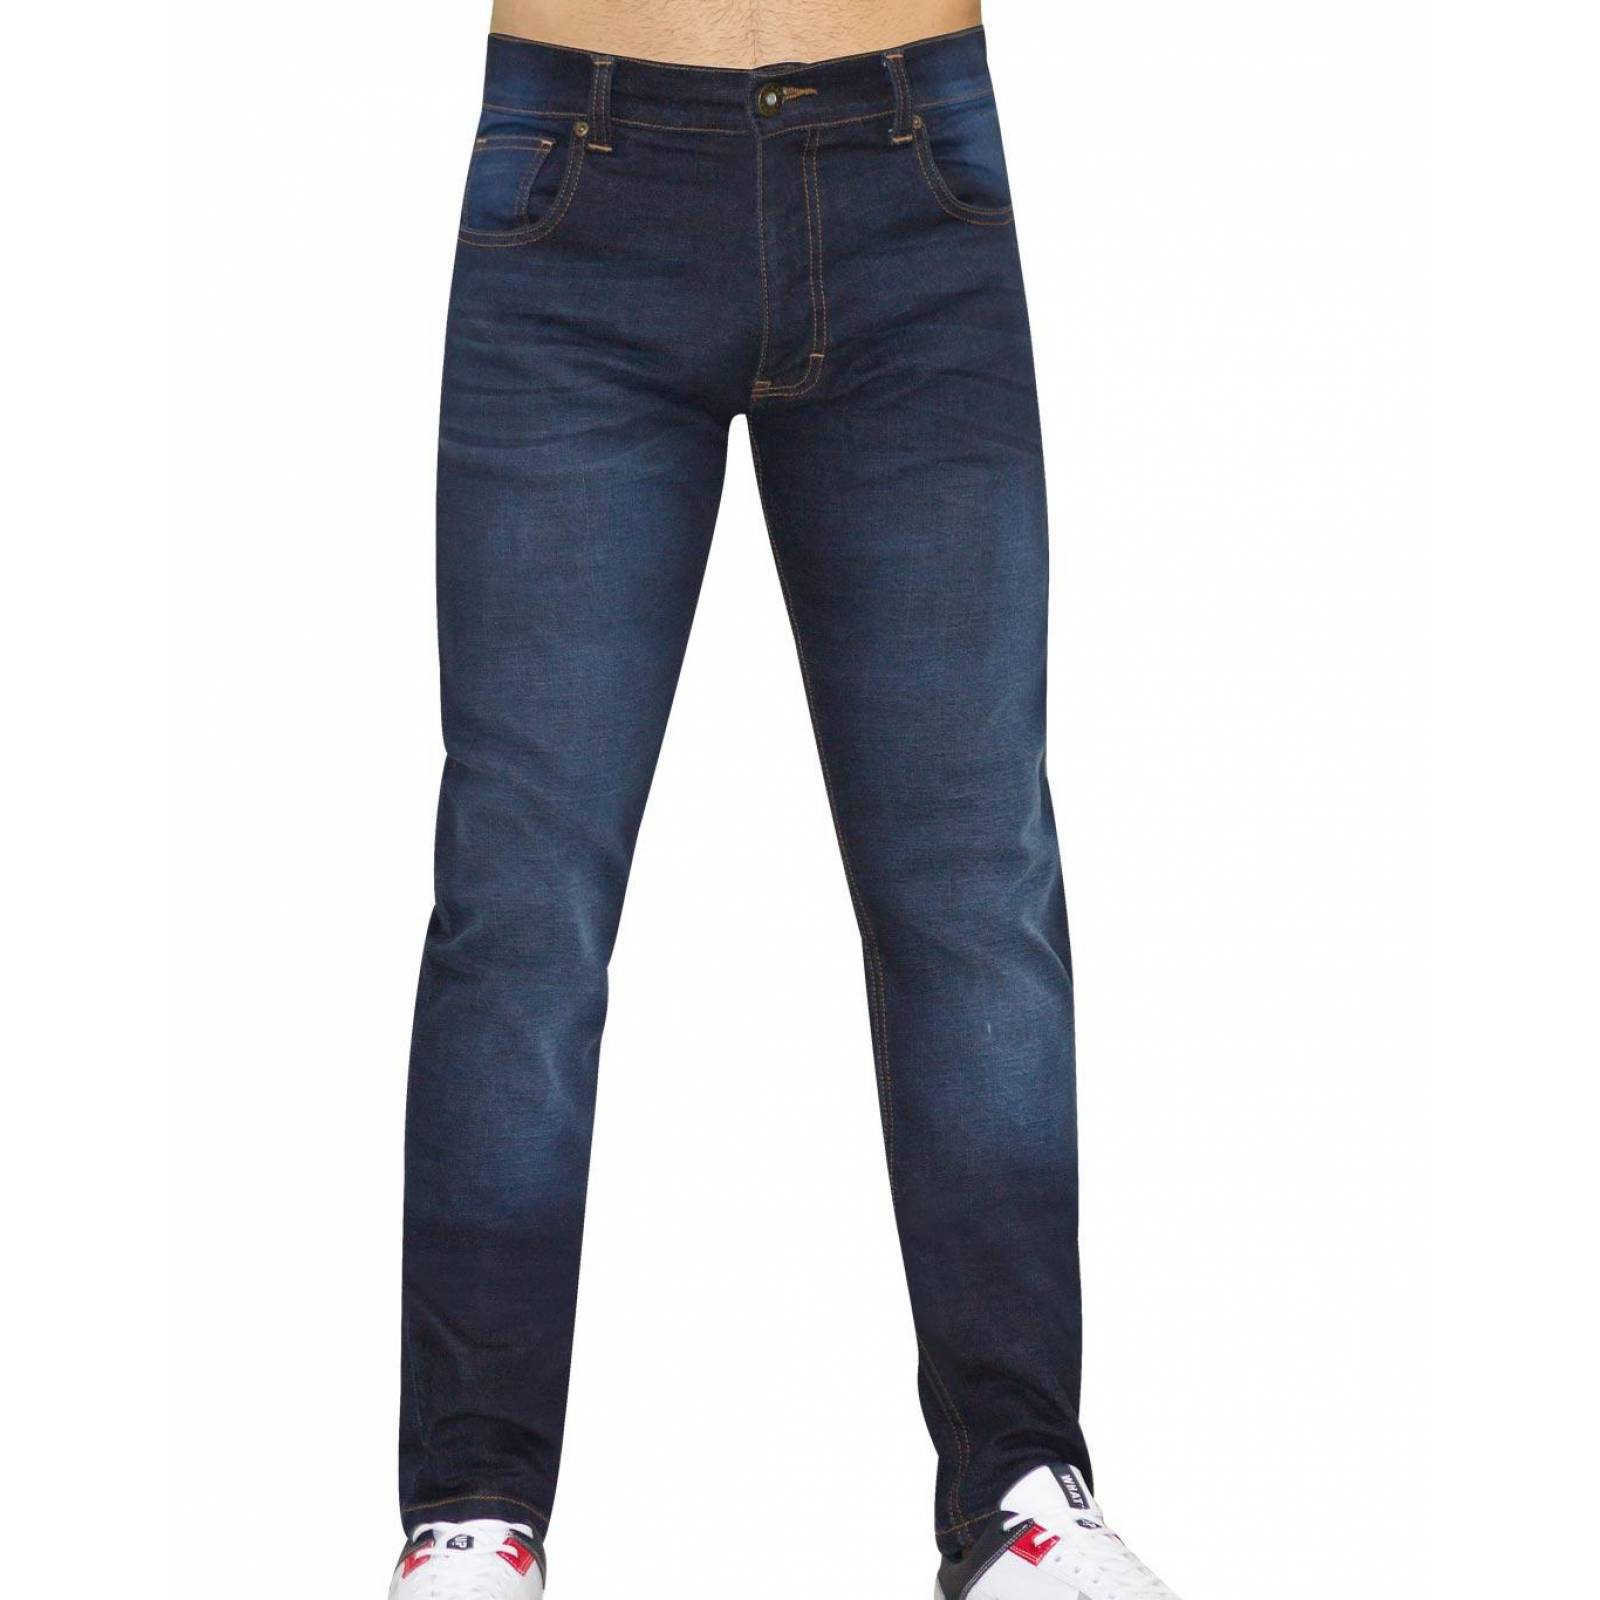 Jeans Básico Hombre Salvaje Tentación Carbon 63103404 Mezclilla Stretch 